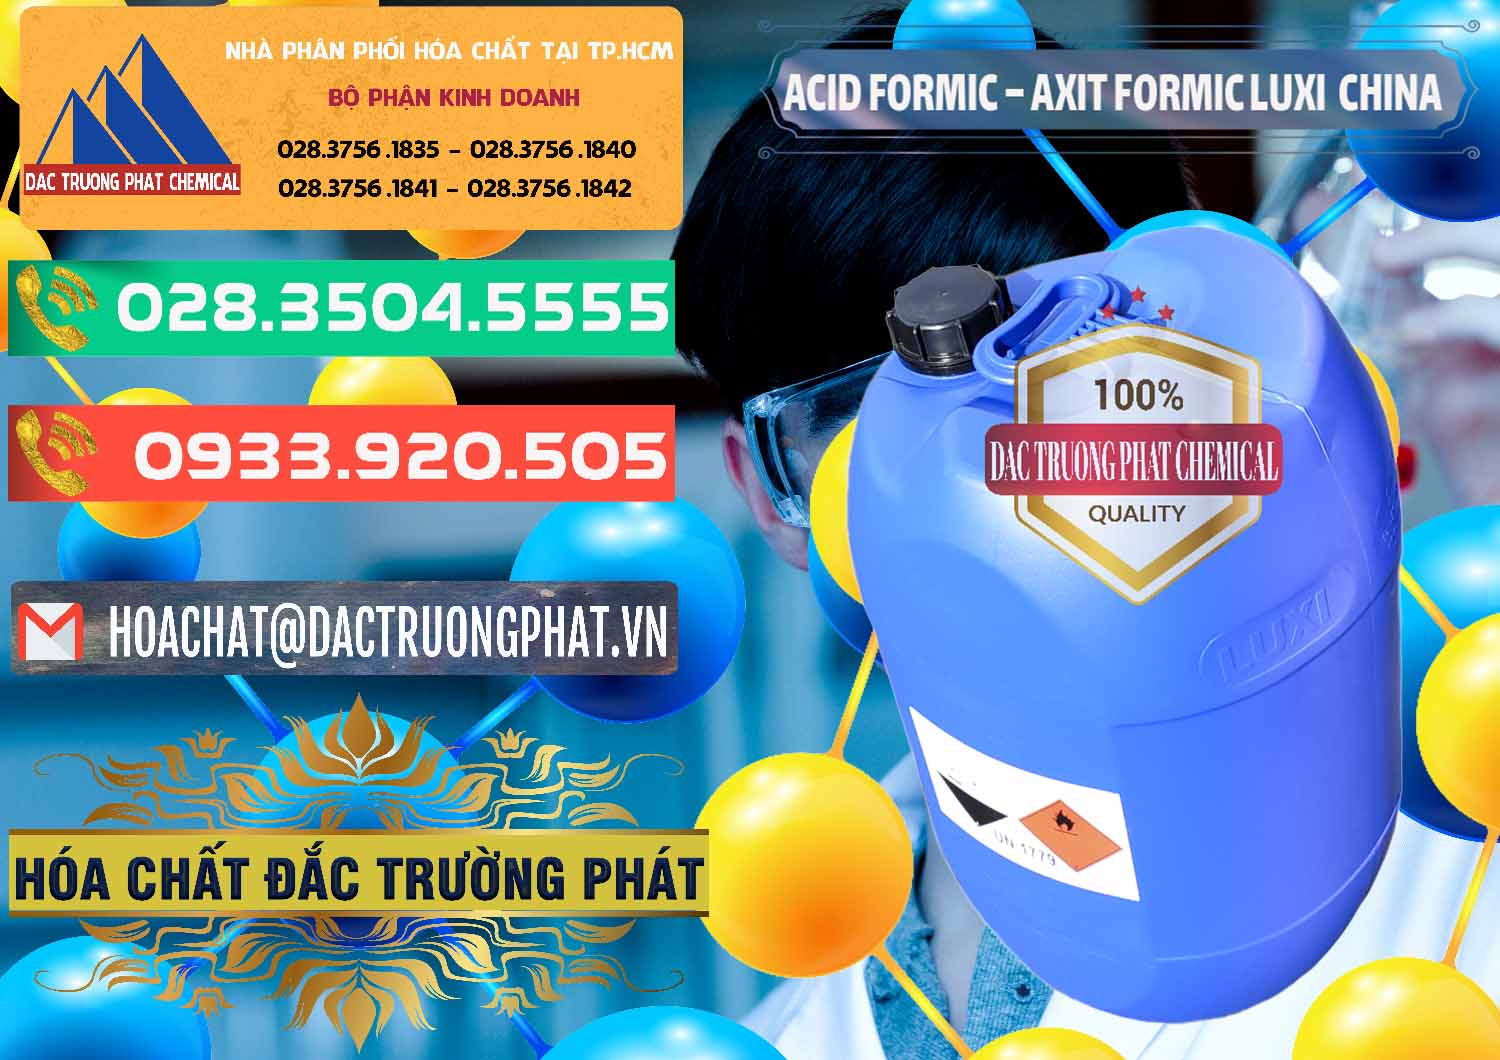 Kinh doanh ( bán ) Acid Formic - Axit Formic Luxi Trung Quốc China - 0029 - Cty nhập khẩu _ cung cấp hóa chất tại TP.HCM - congtyhoachat.com.vn